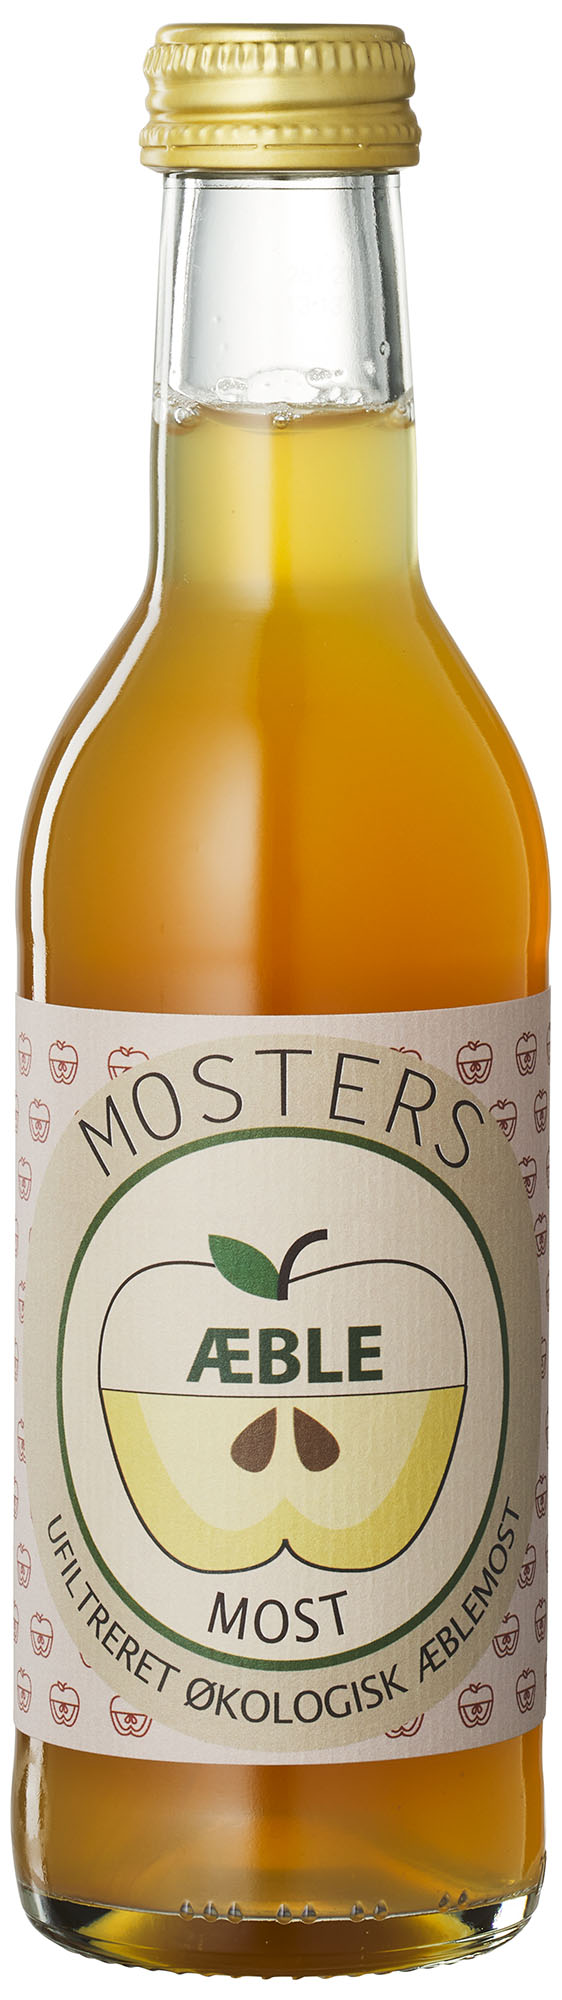 Mosters Æble drik, øko, 250ml